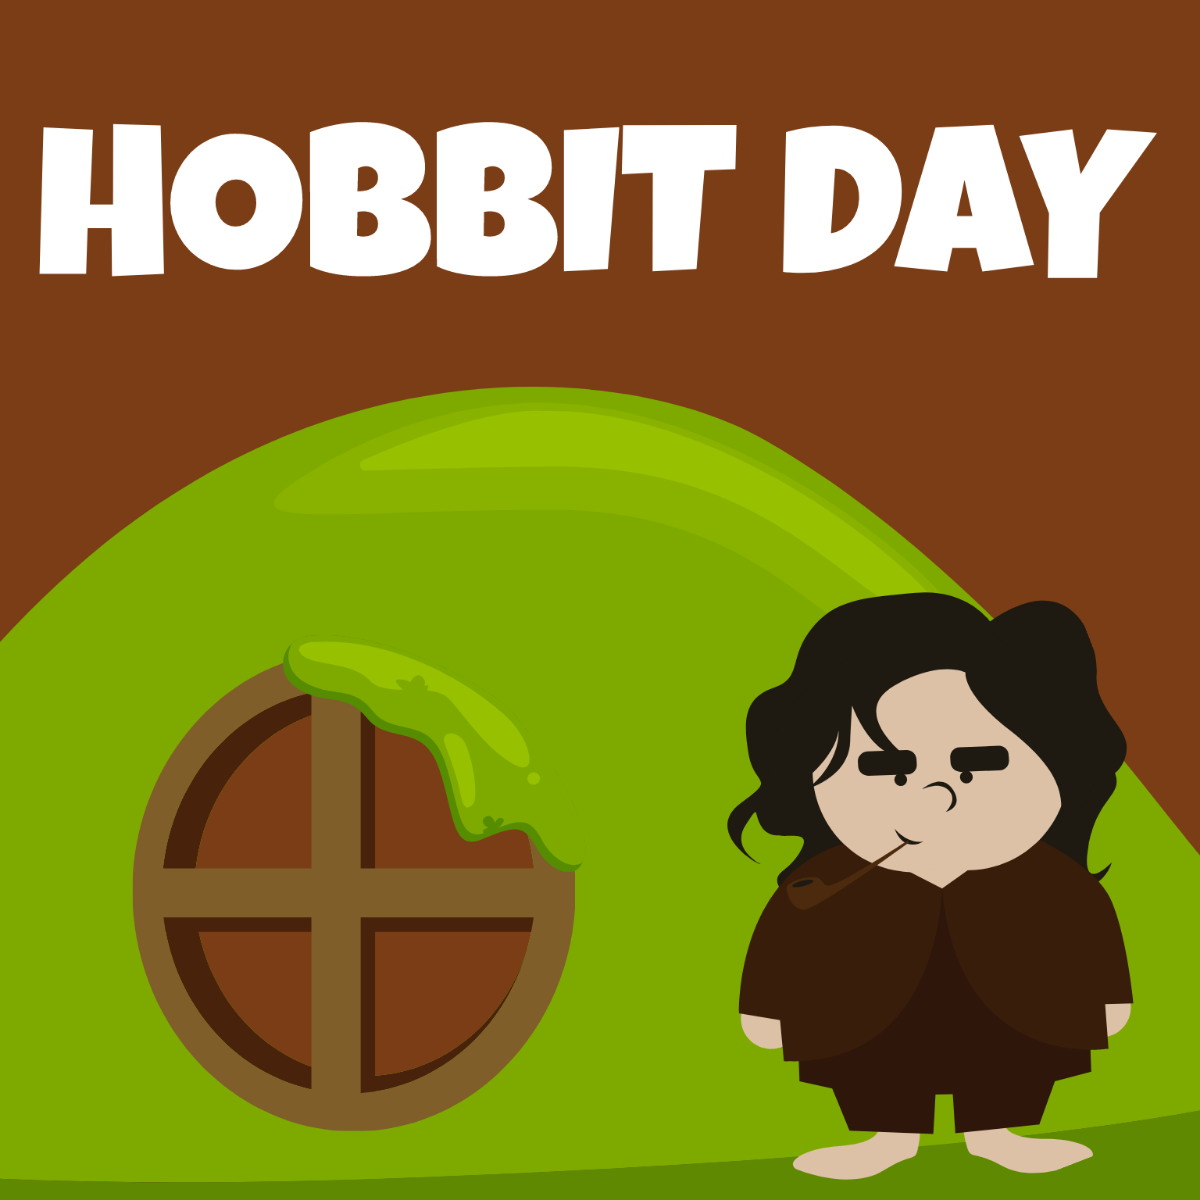 Hobbit Day Cartoon Vector Template